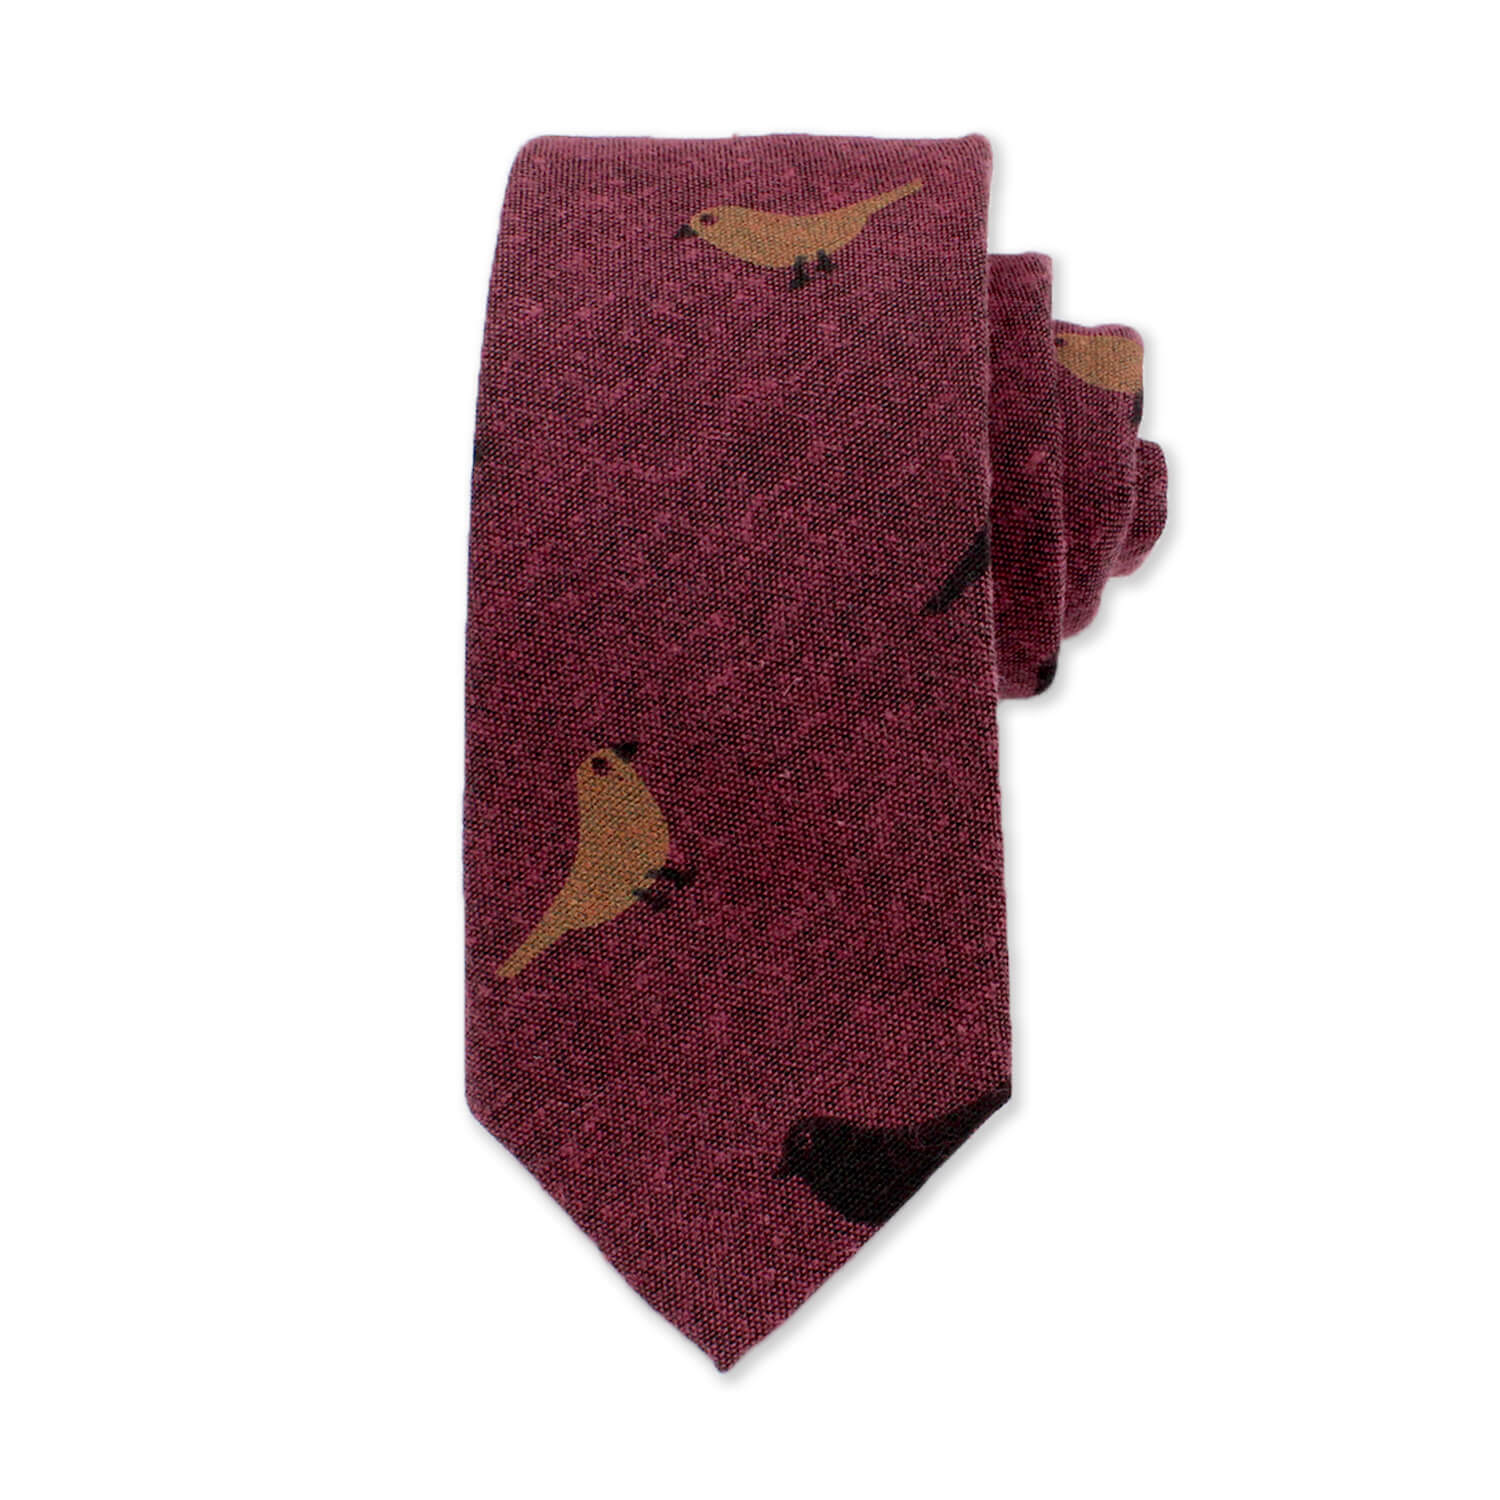 Bird Novelty Tie, Burgundy